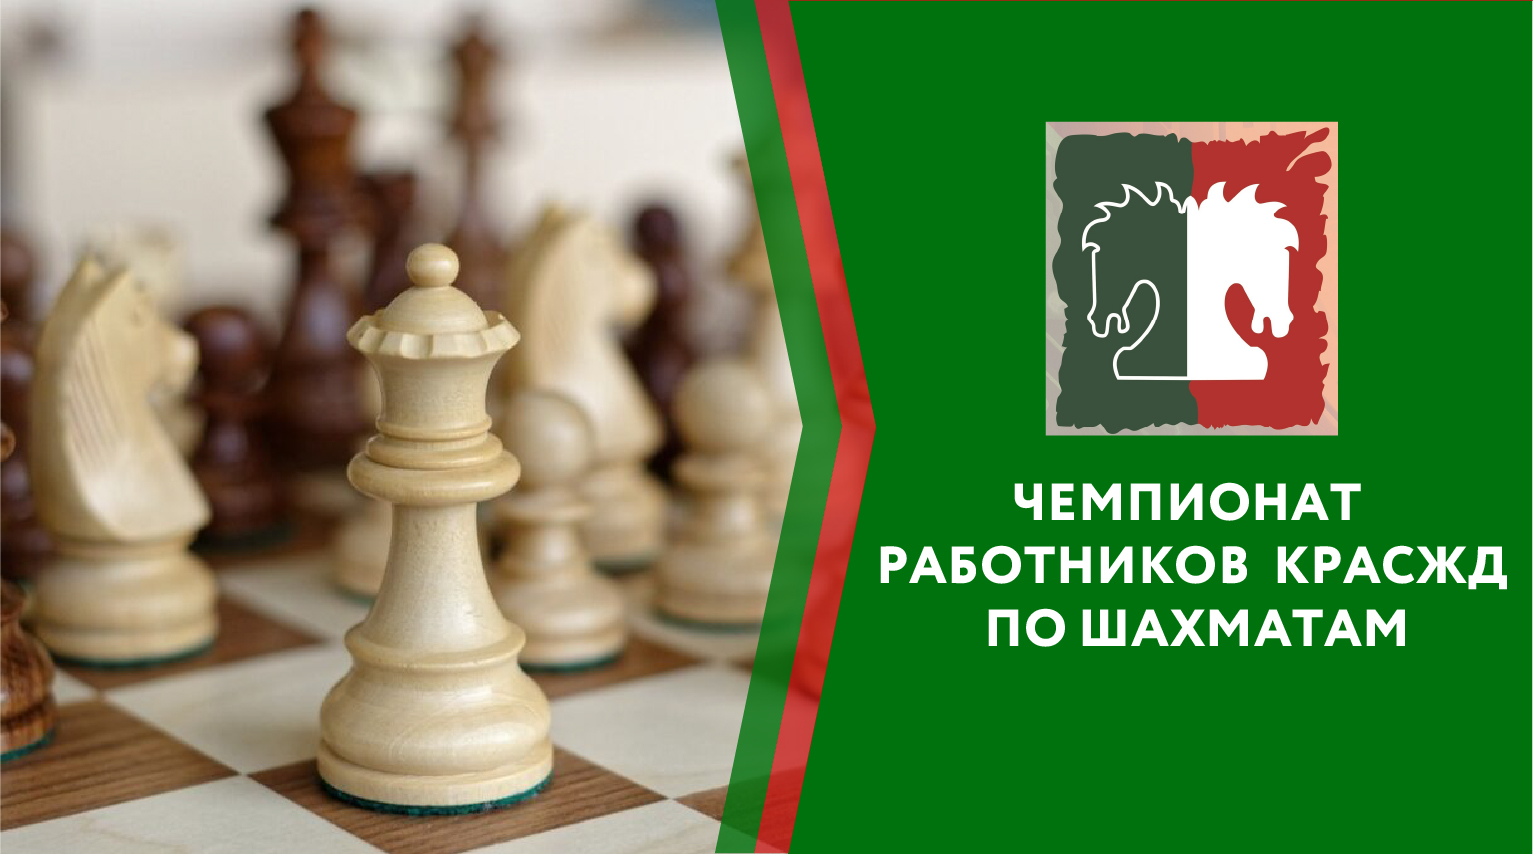 Чемпионат работников Красноярской железной дороги по шахматам